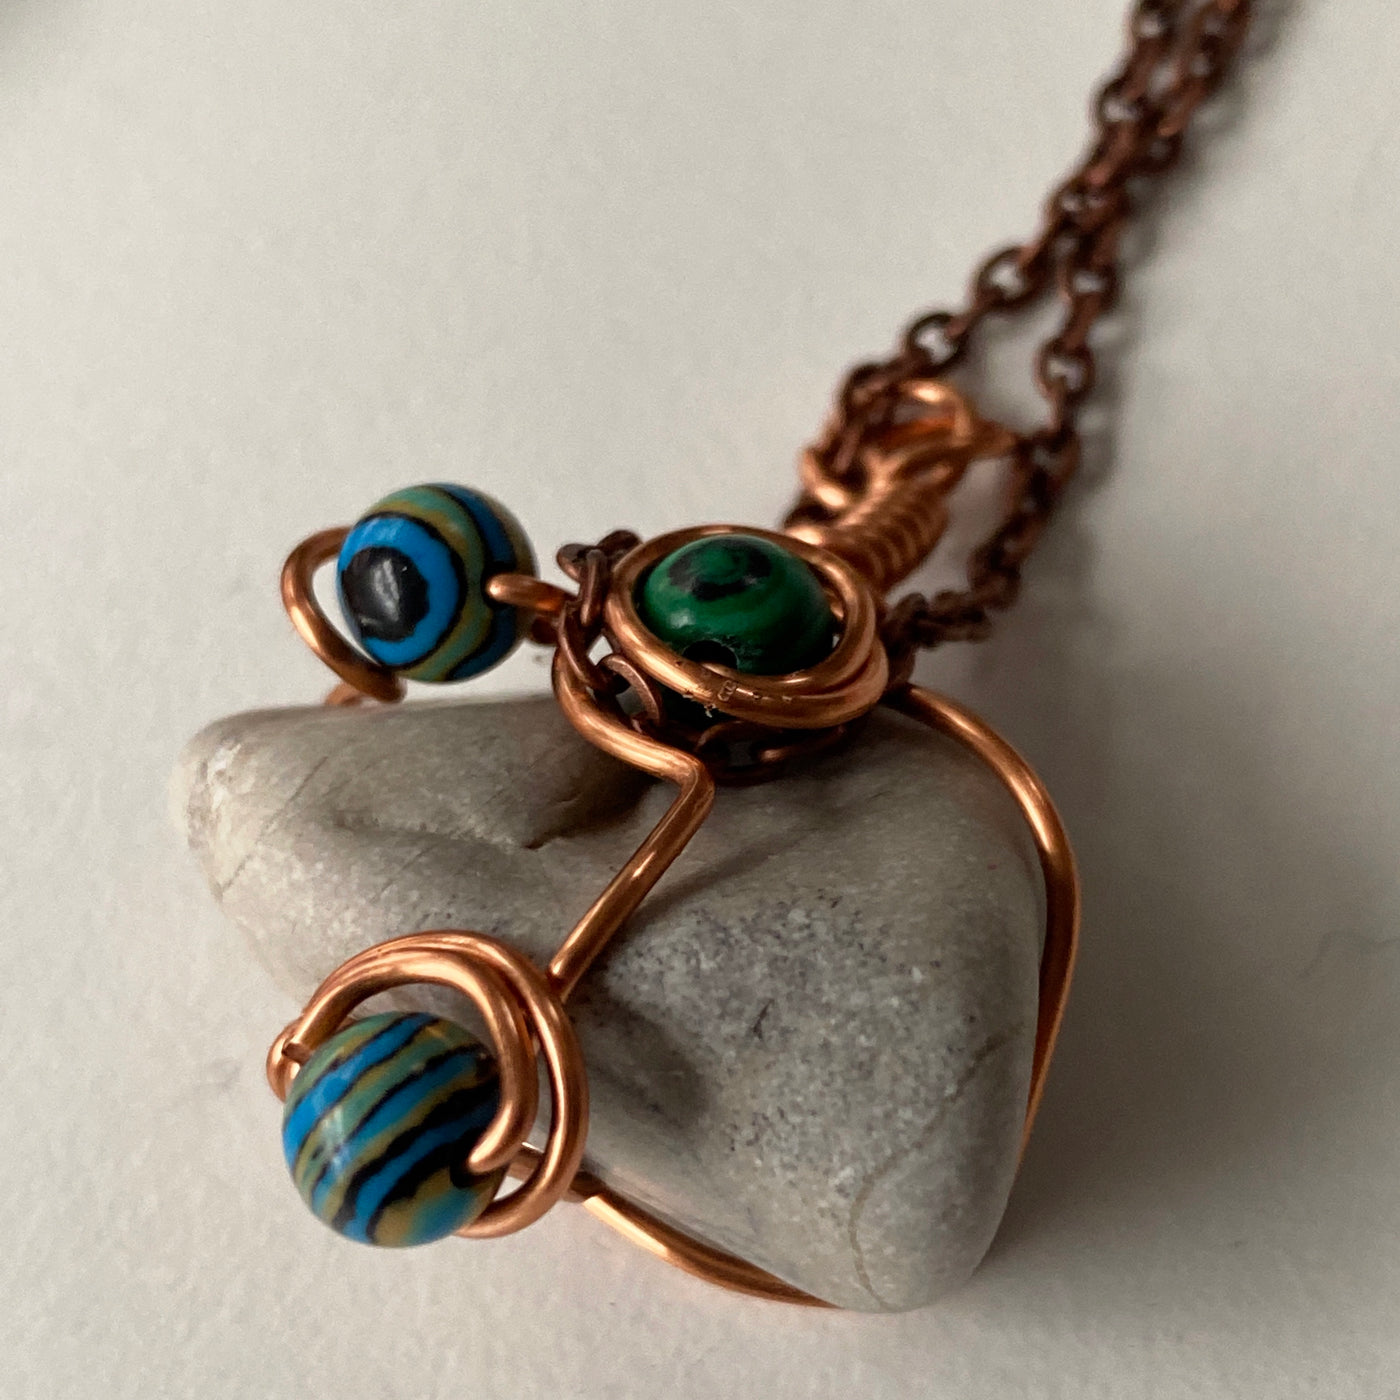 Small pendant. White natural stone, malachite, blue malachite and wire. Elbastones collection.